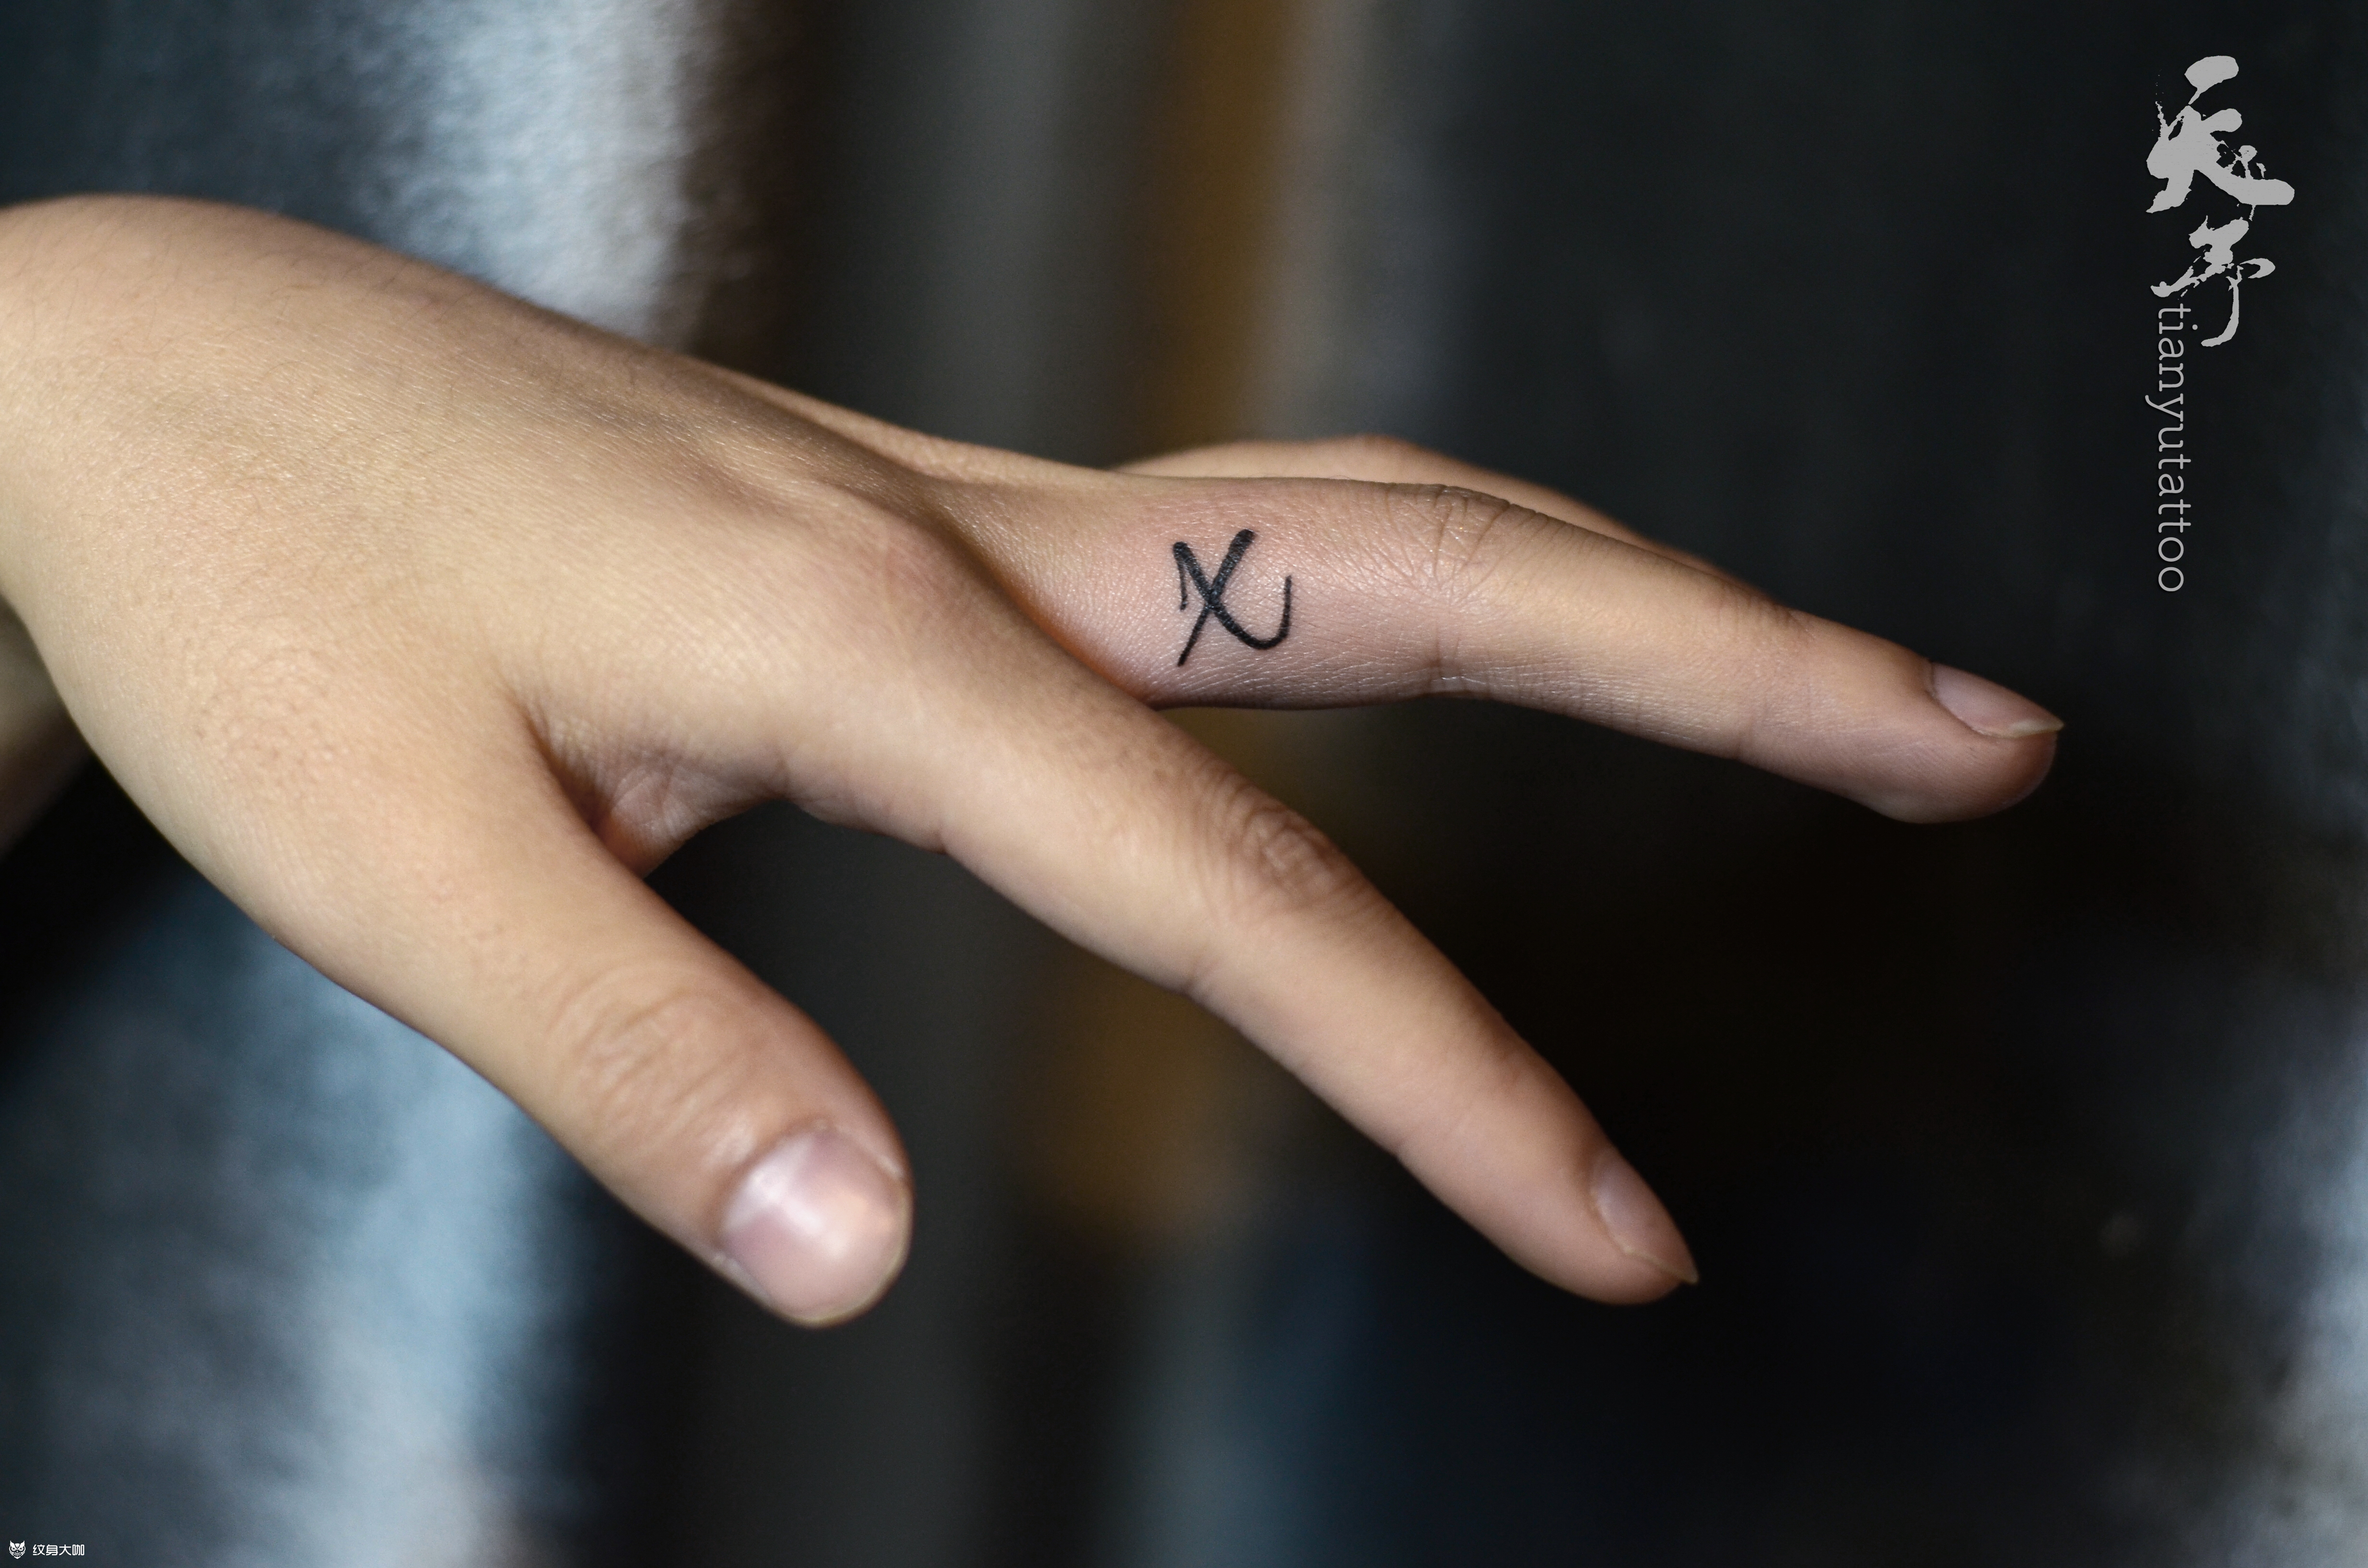 x字母创意纹身设计图片